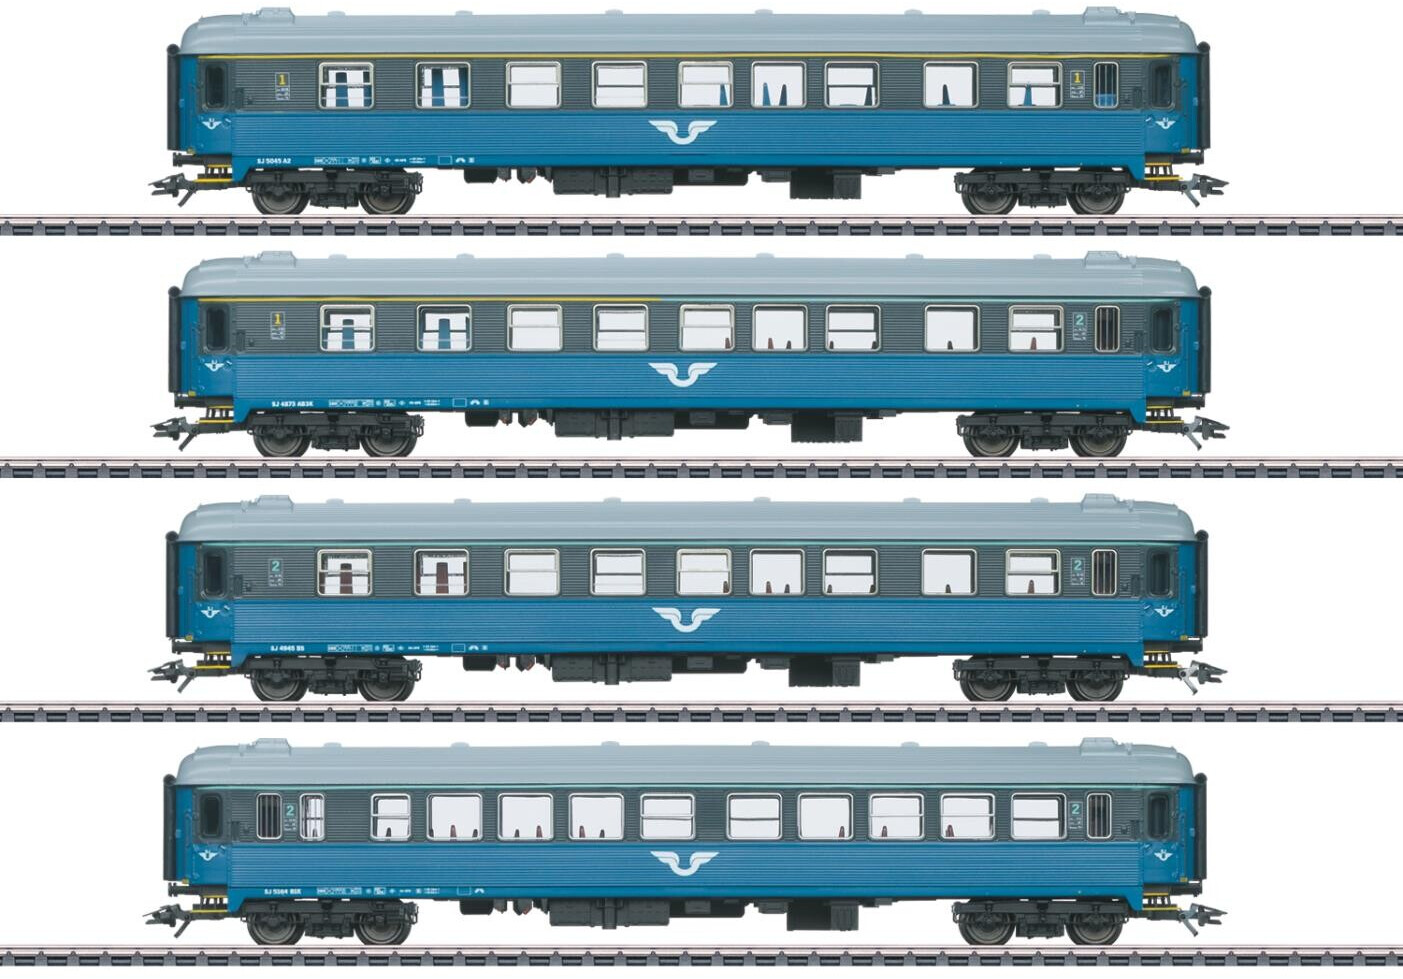 MEHANO - T871 - Coffret de train électrique TGV Inoui